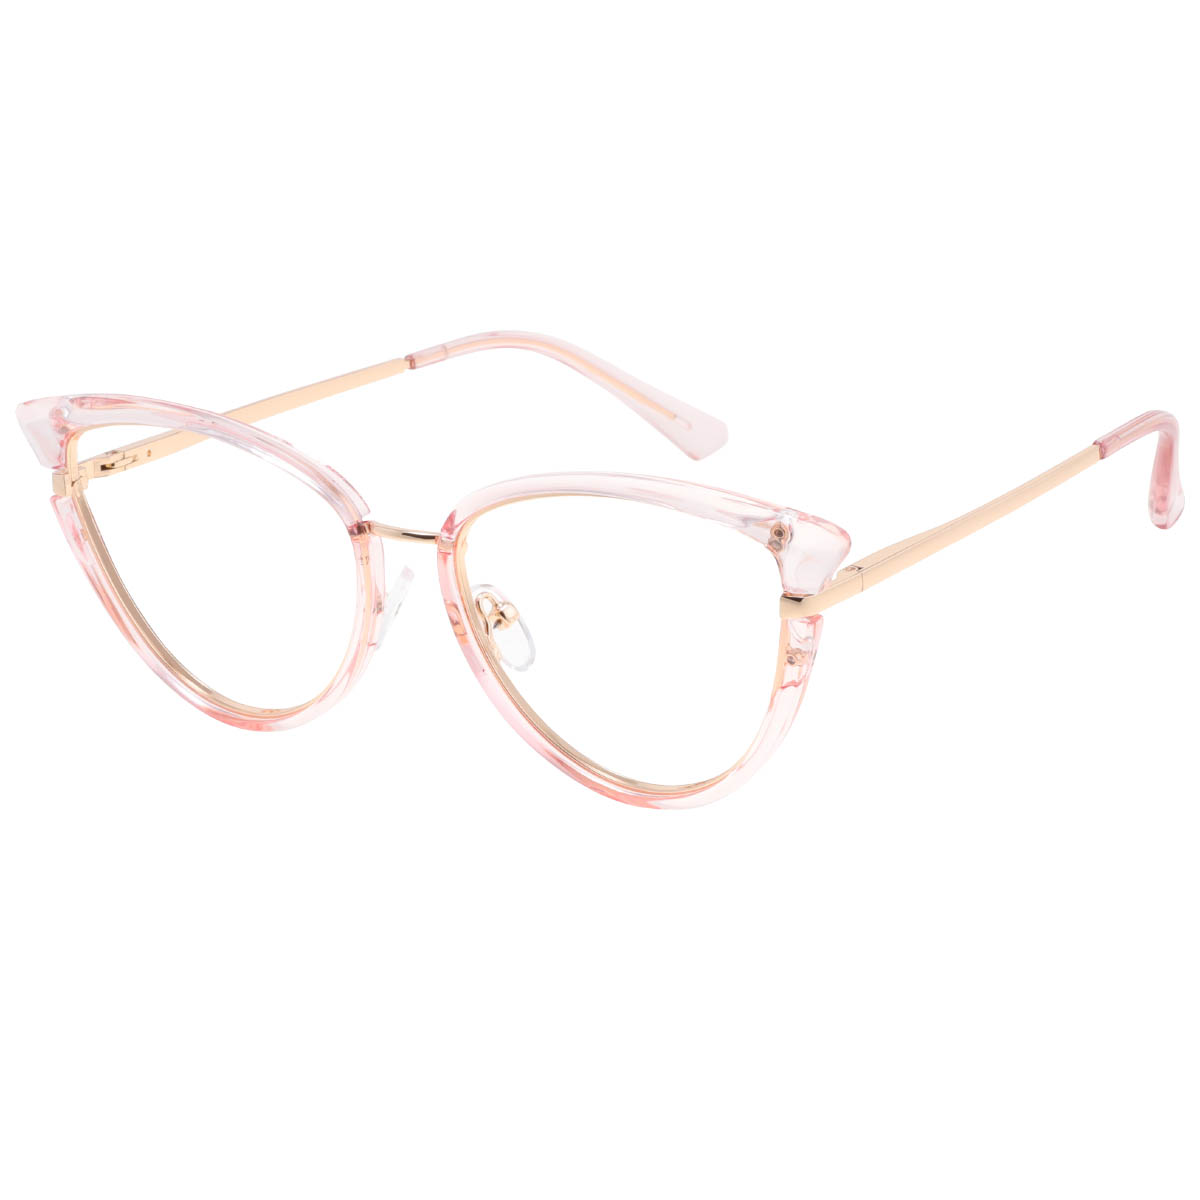 Barcelona - Cat-eye Pink Reading Glasses for Women